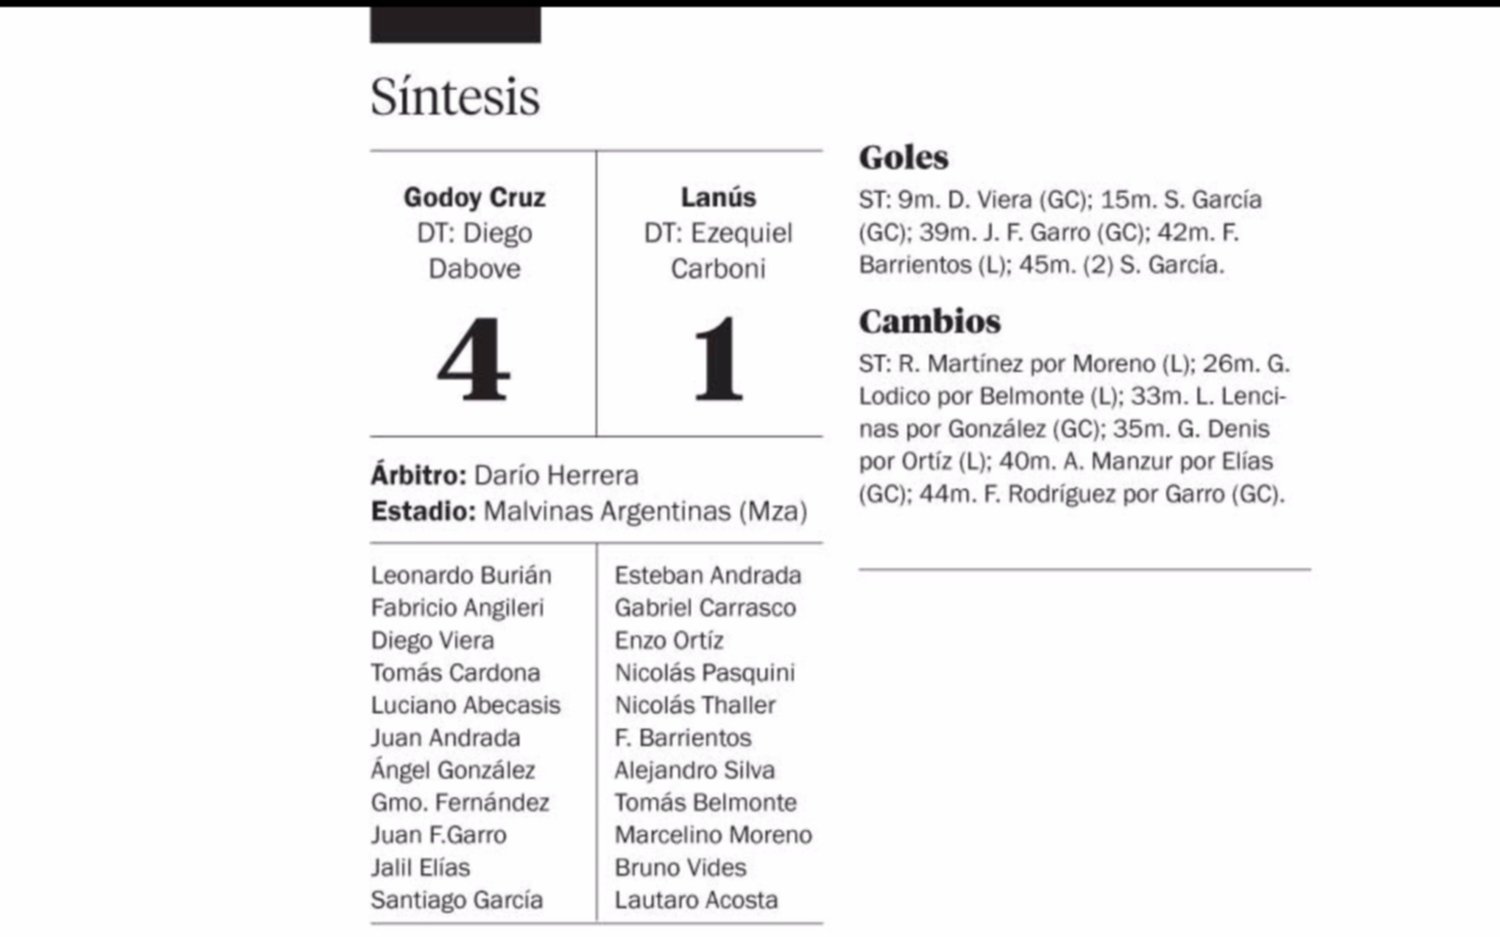 Godoy Cruz encontró la ruta del gol en el segundo tiempo